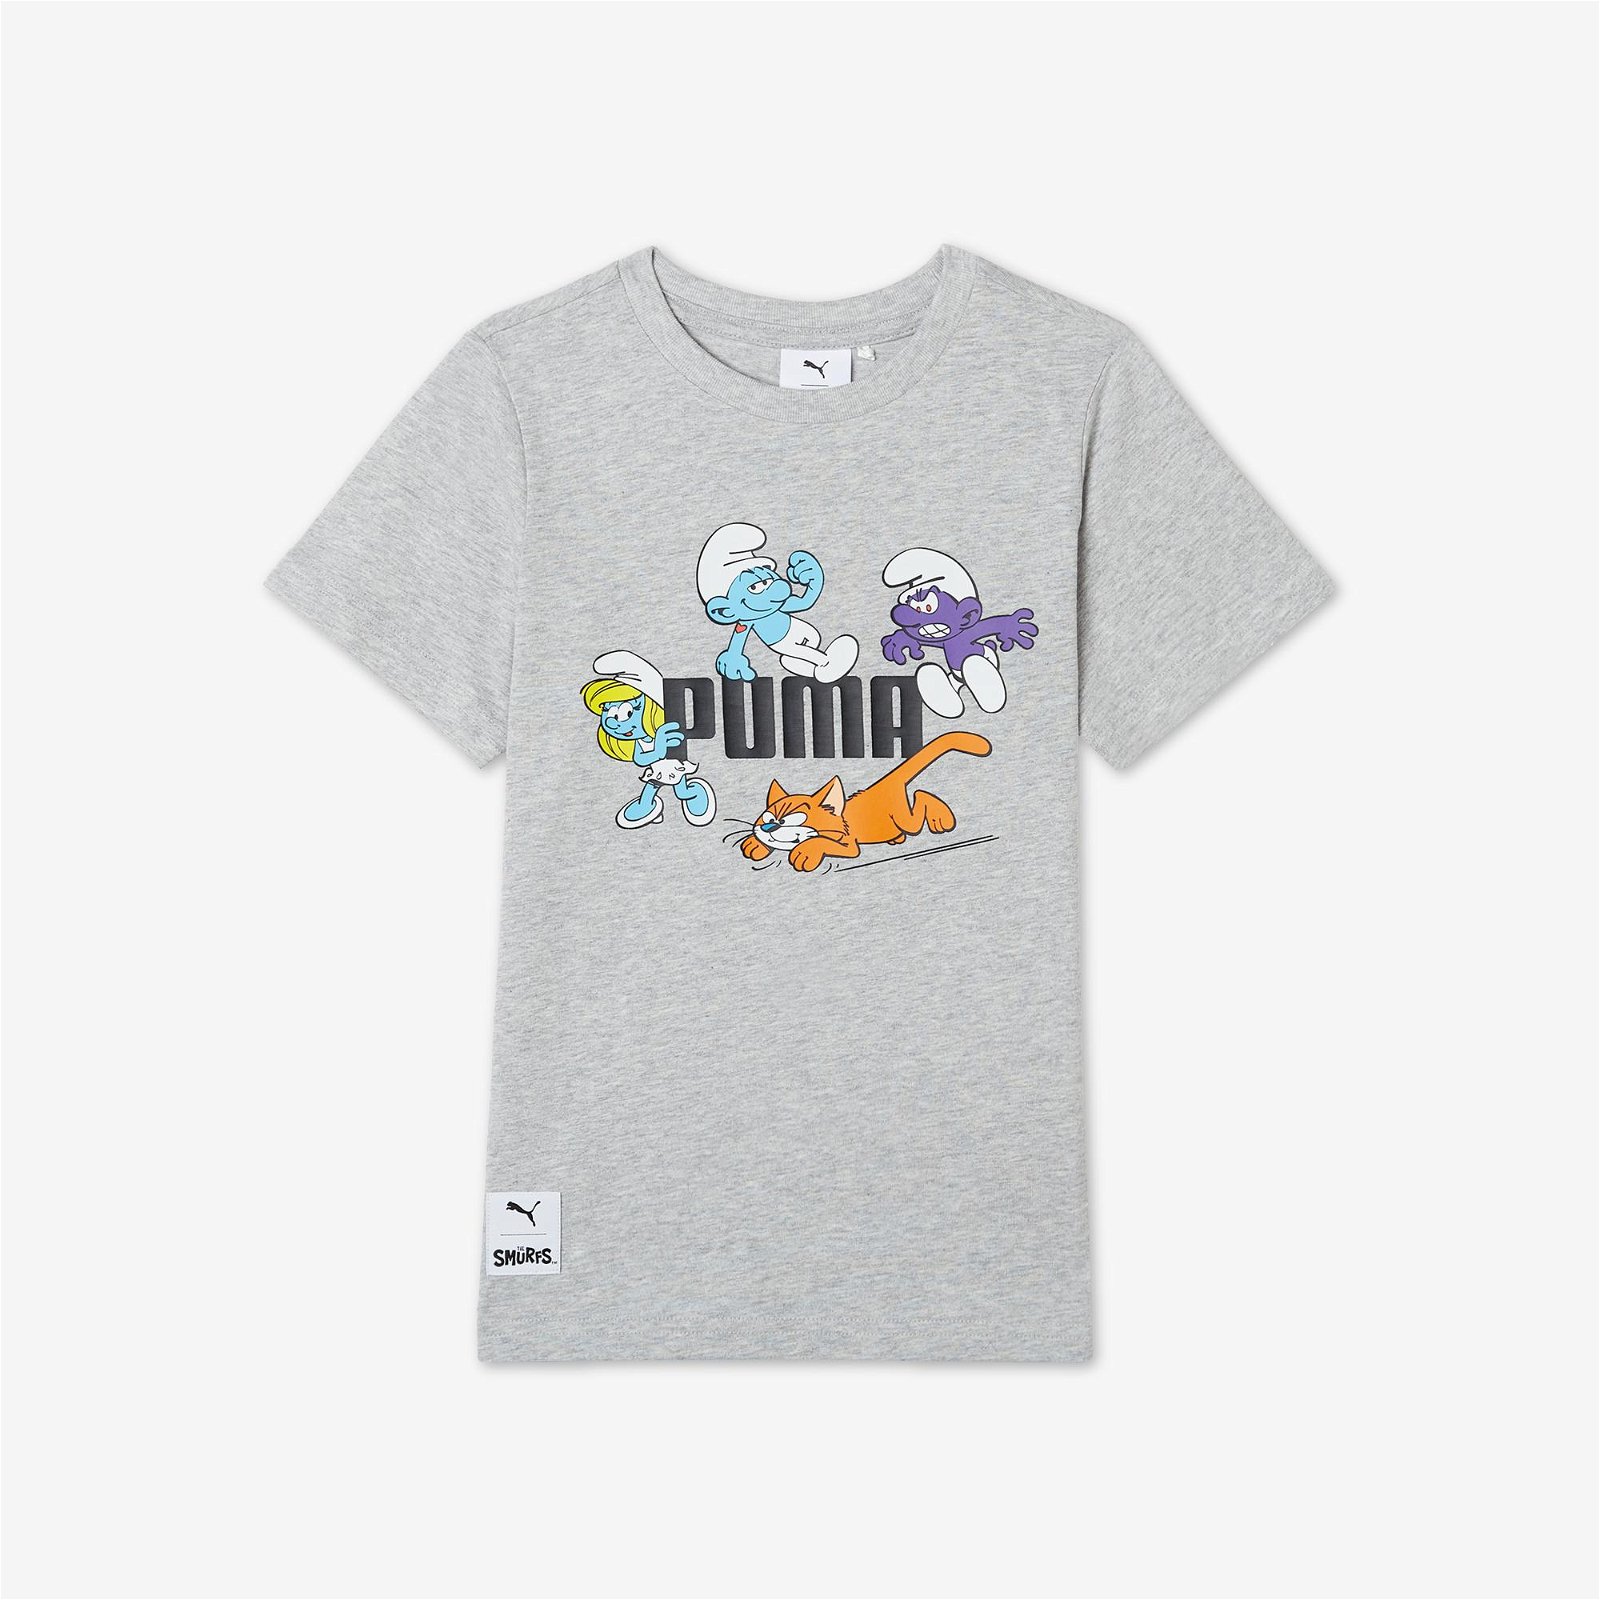  Puma X THE SMURFS Çocuk Gri T-Shirt